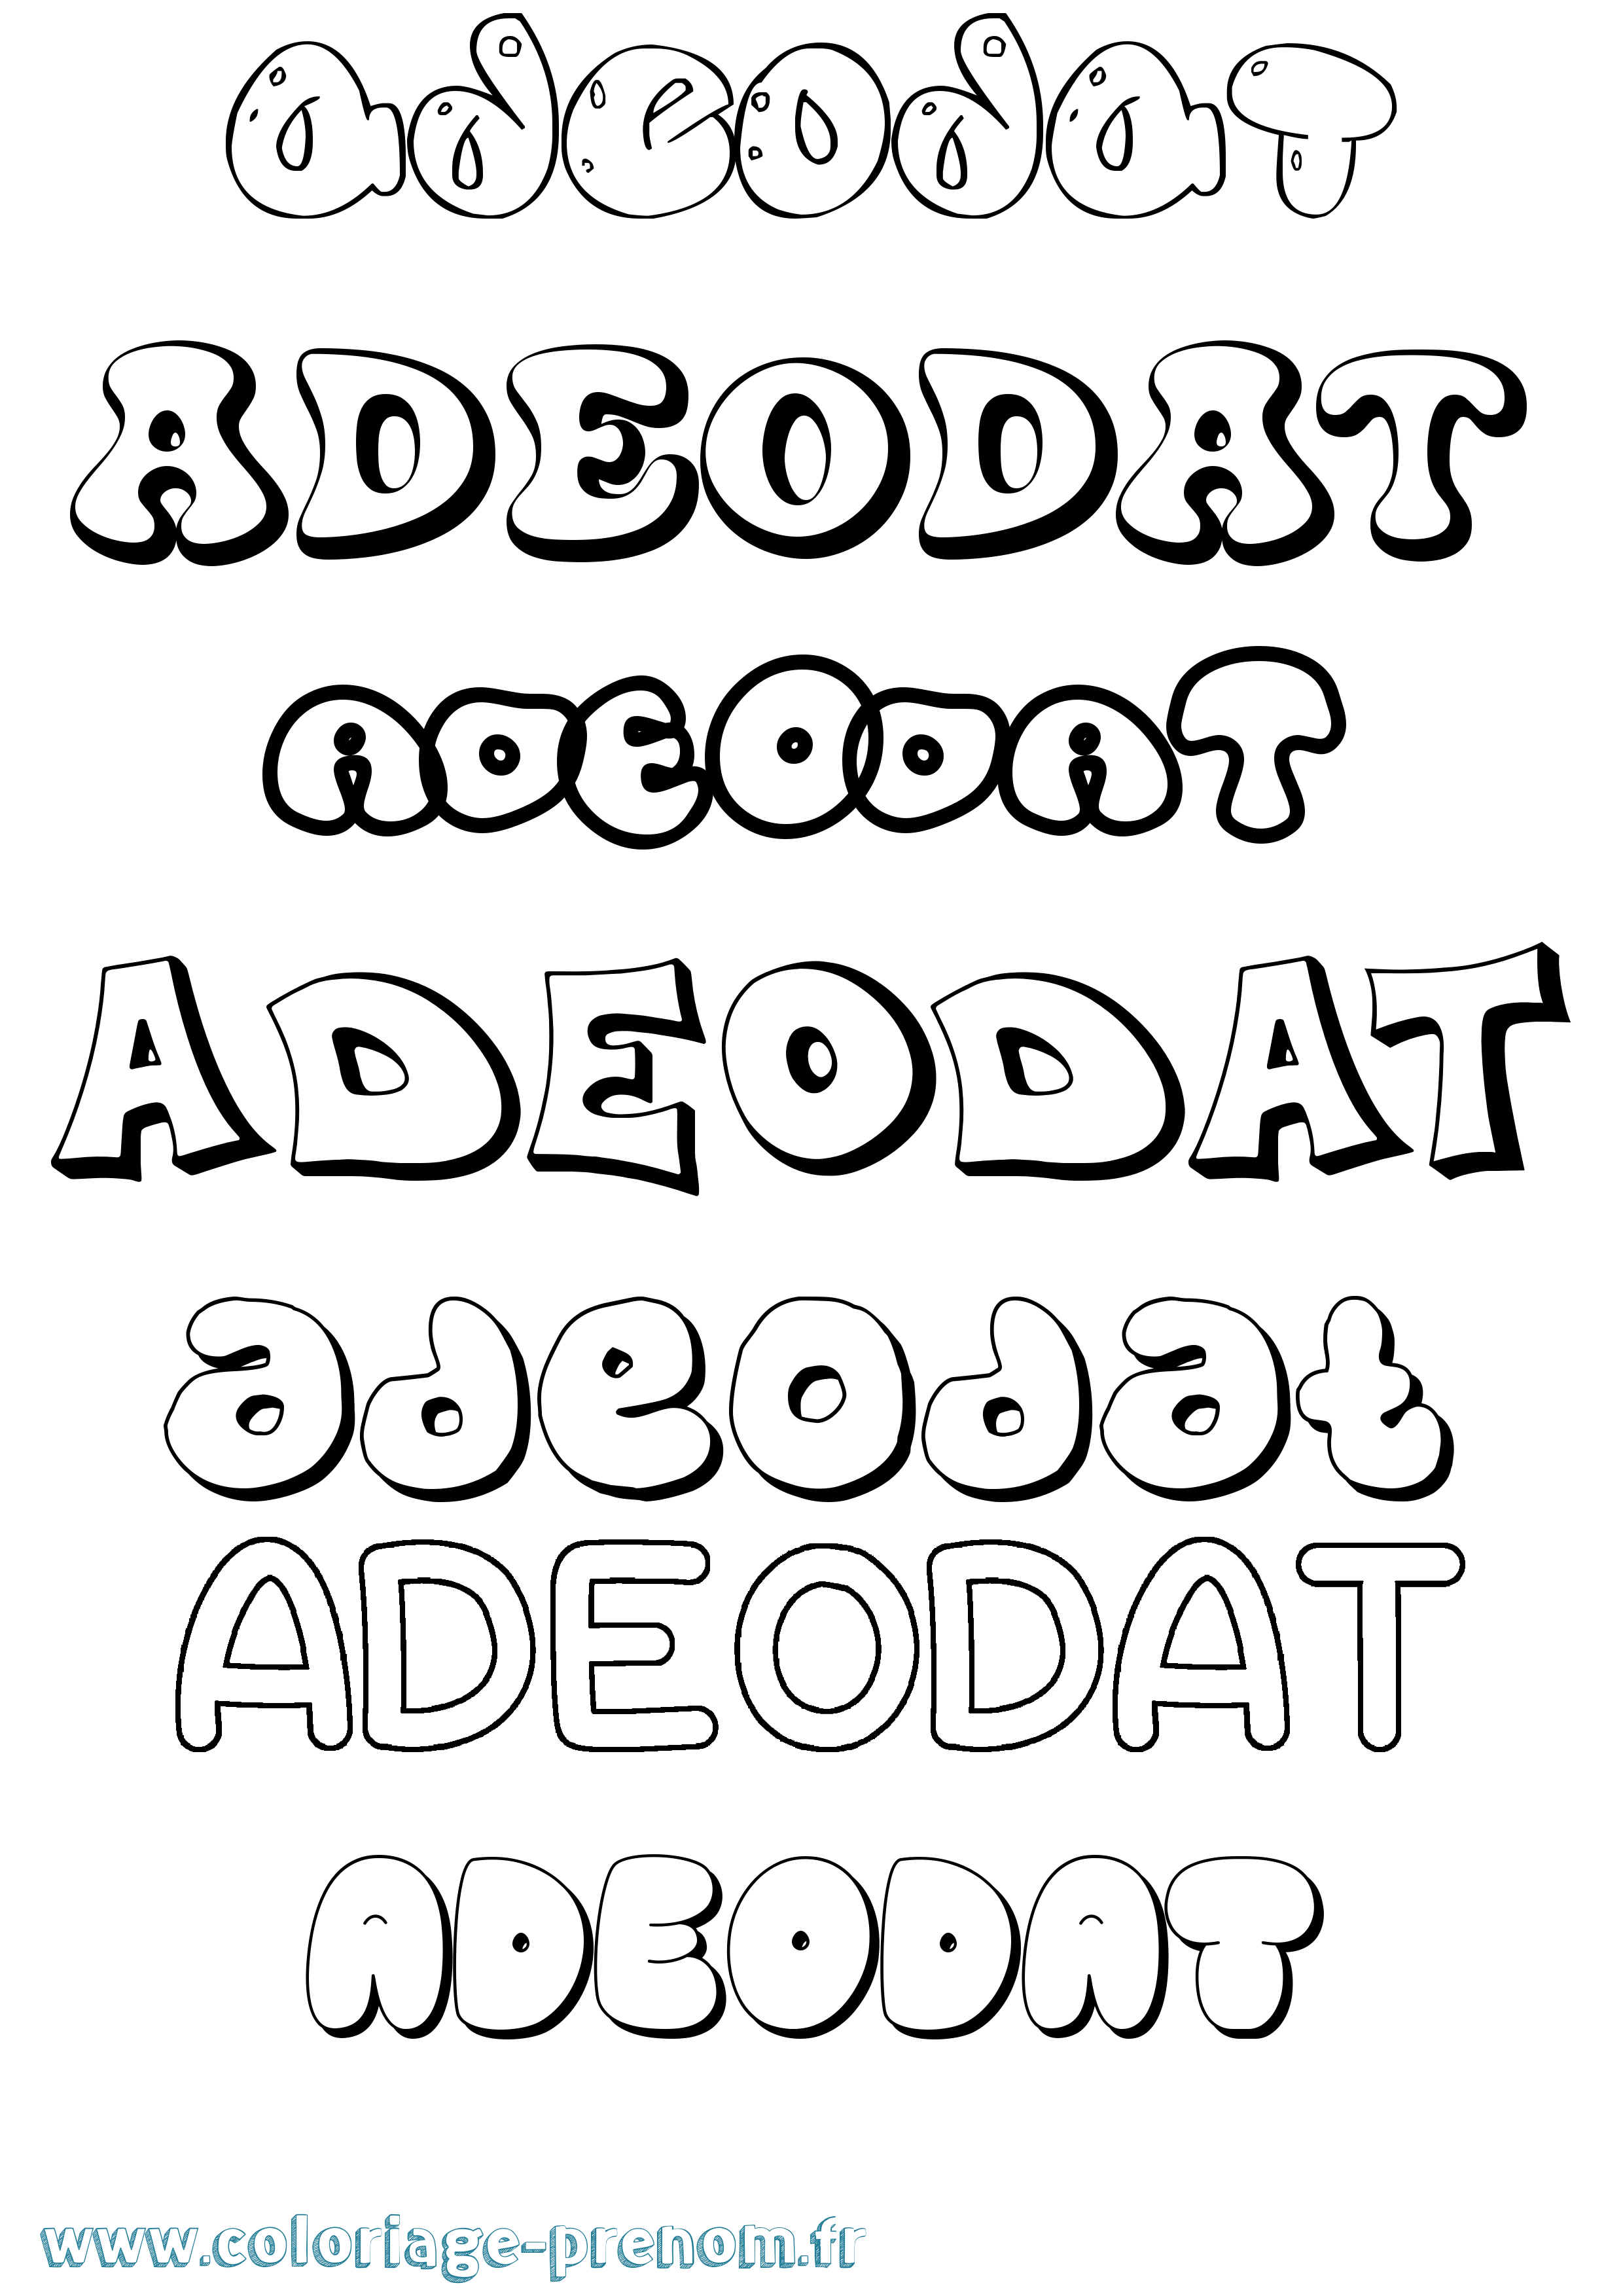 Coloriage prénom Adeodat Bubble